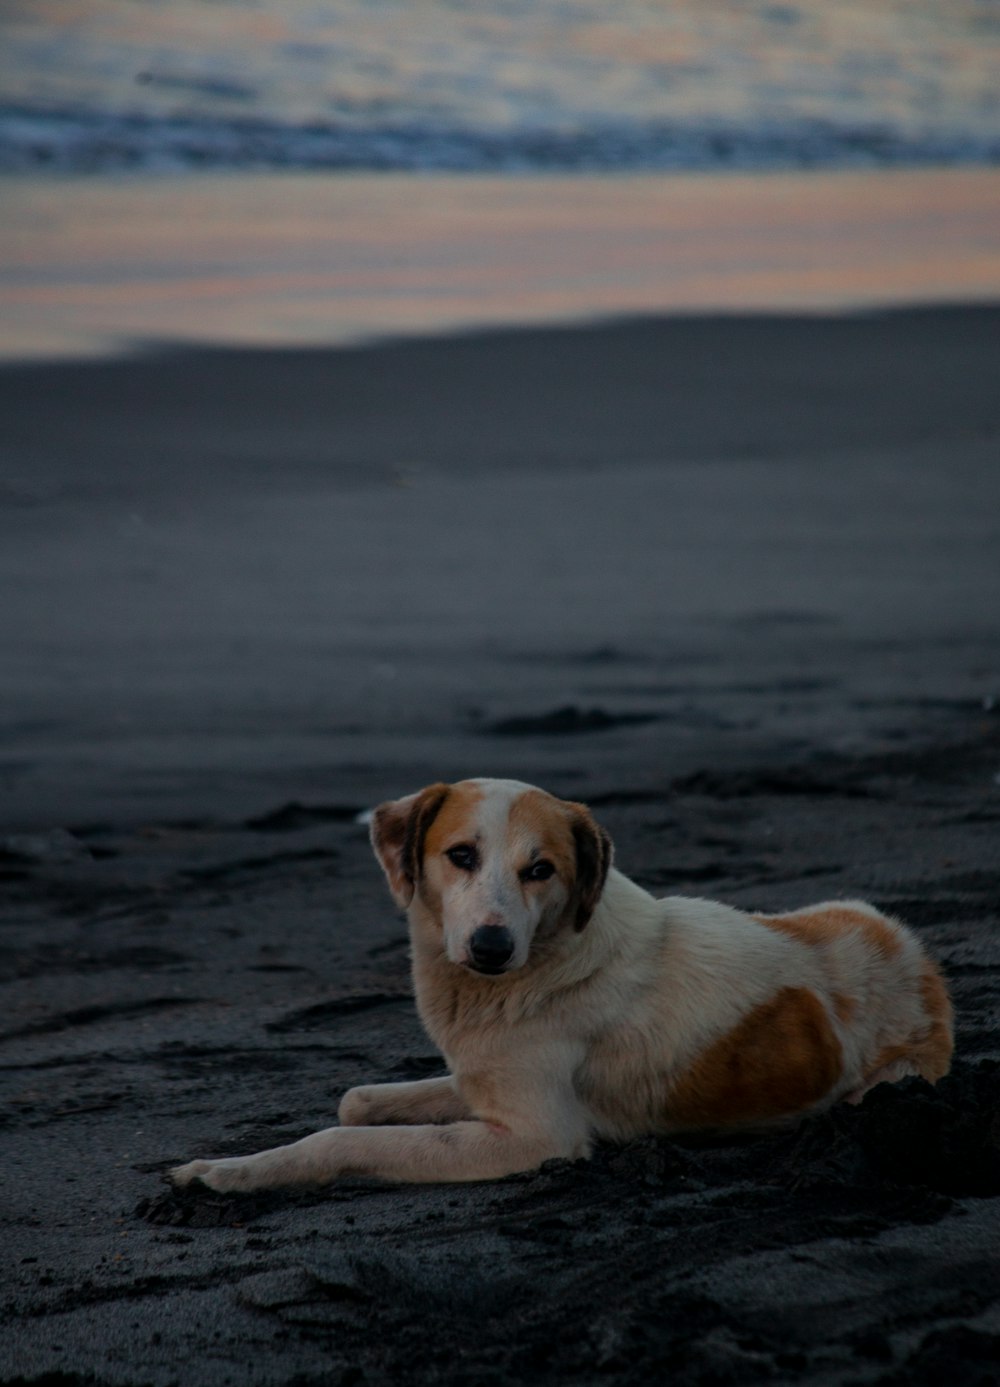 cane a pelo corto marrone e bianco sdraiato sulla spiaggia durante il giorno